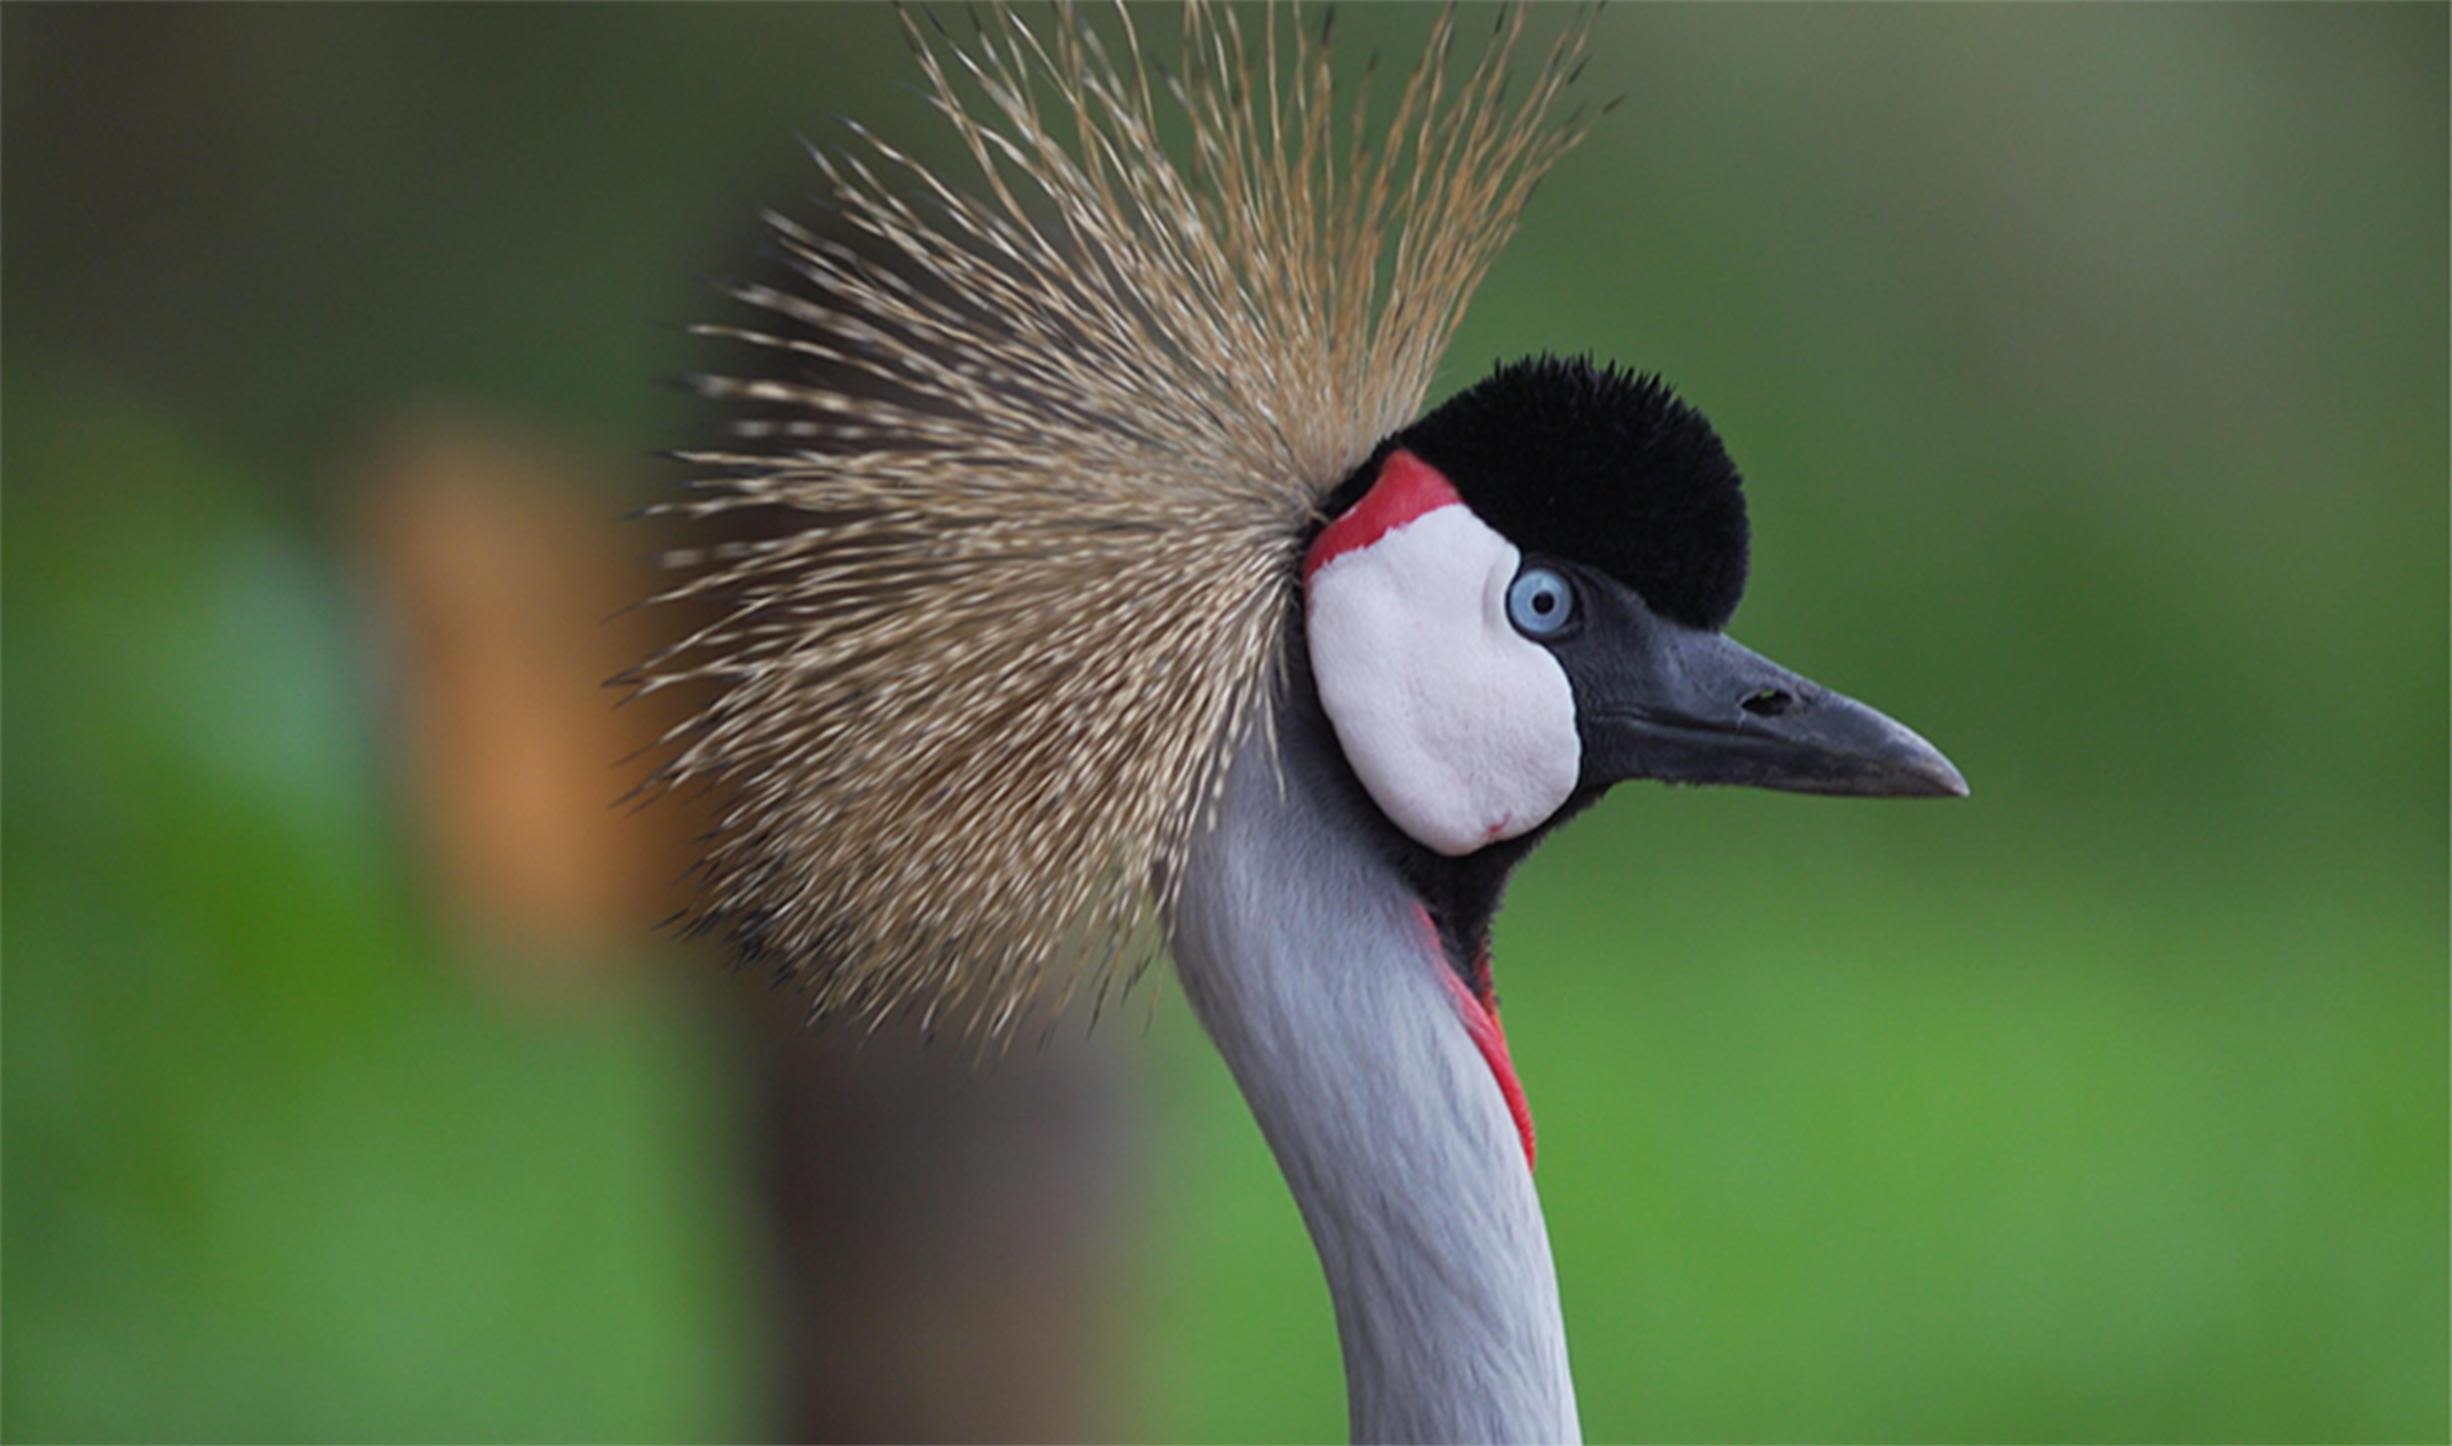 How Rwanda's gray crowned cranes escaped a life as status symbol pets | CNN